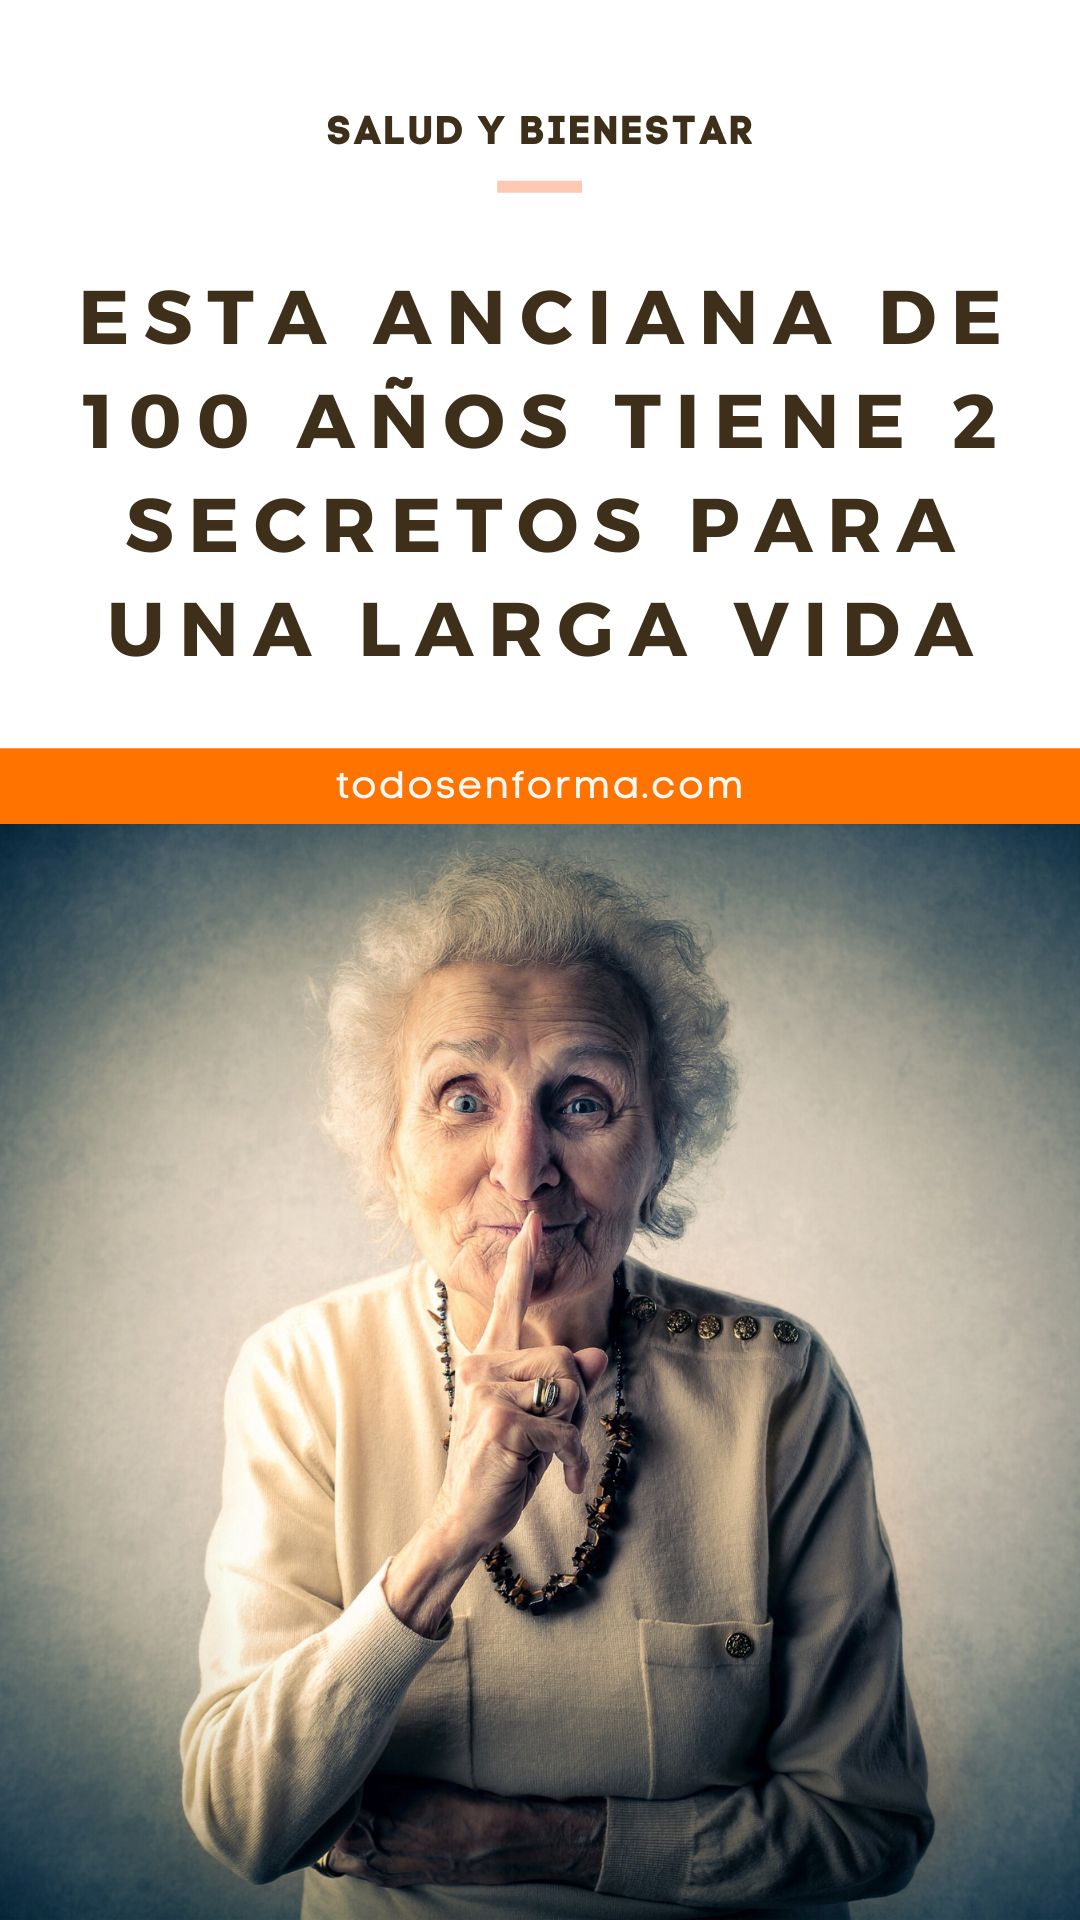 Esta anciana de 100 años tiene 2 secretos para una larga vida